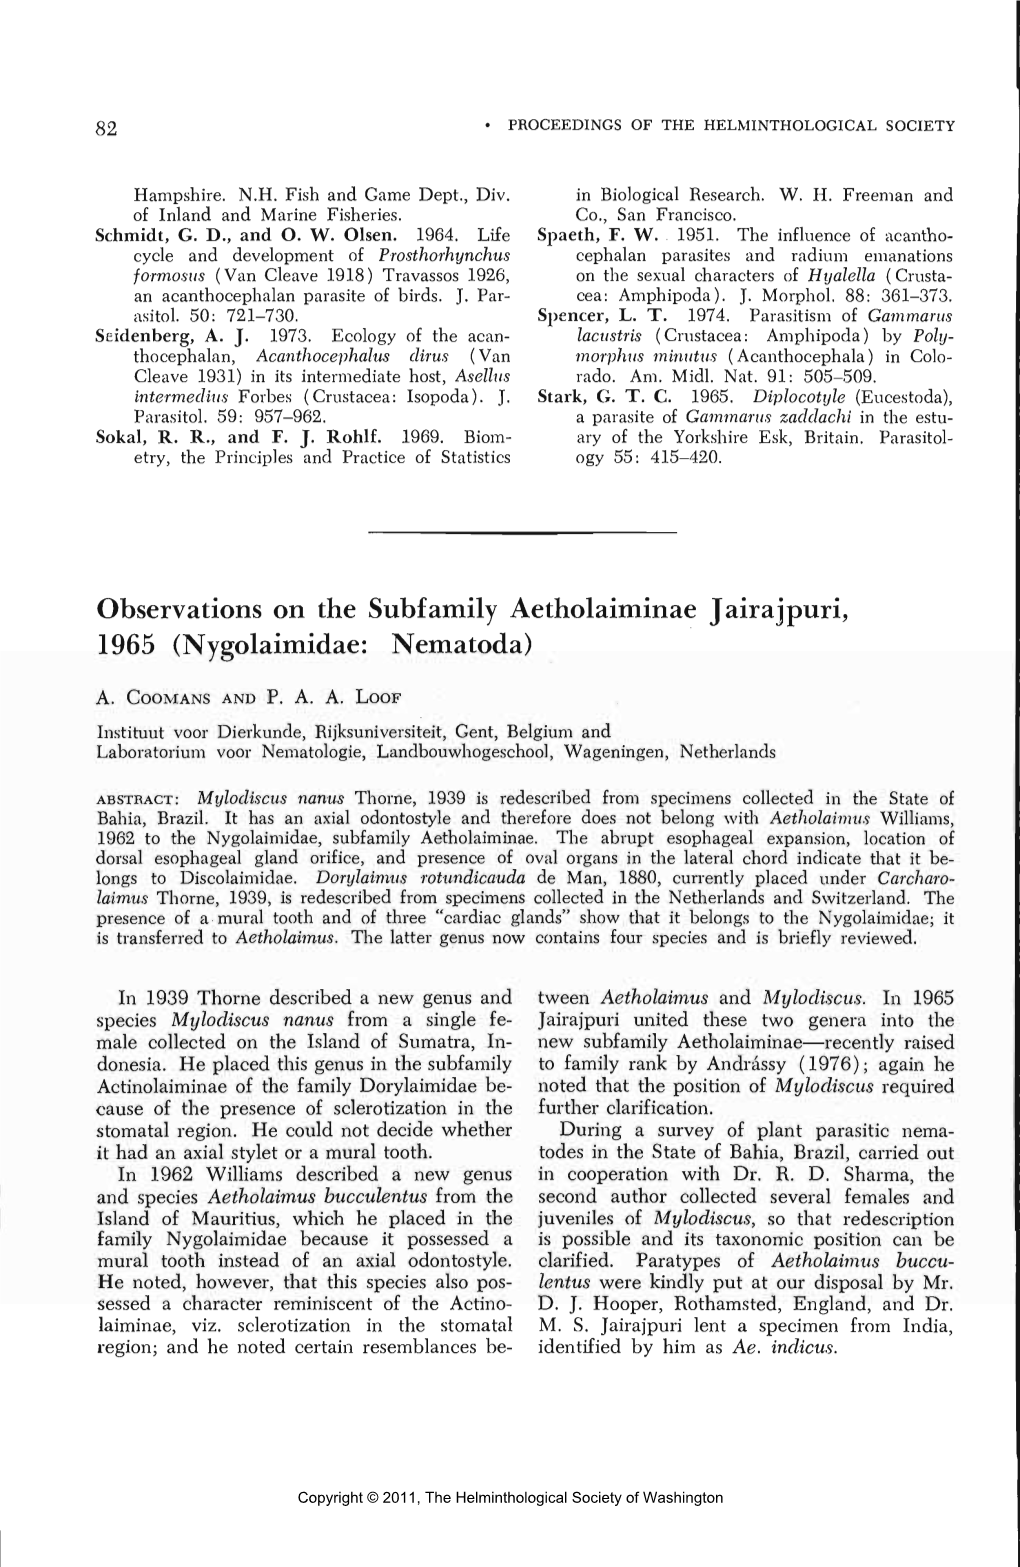 Observations on the Subfamily Aetholaiminae Jairajpuri, 1965 (Nygolaimidae: Nematoda)